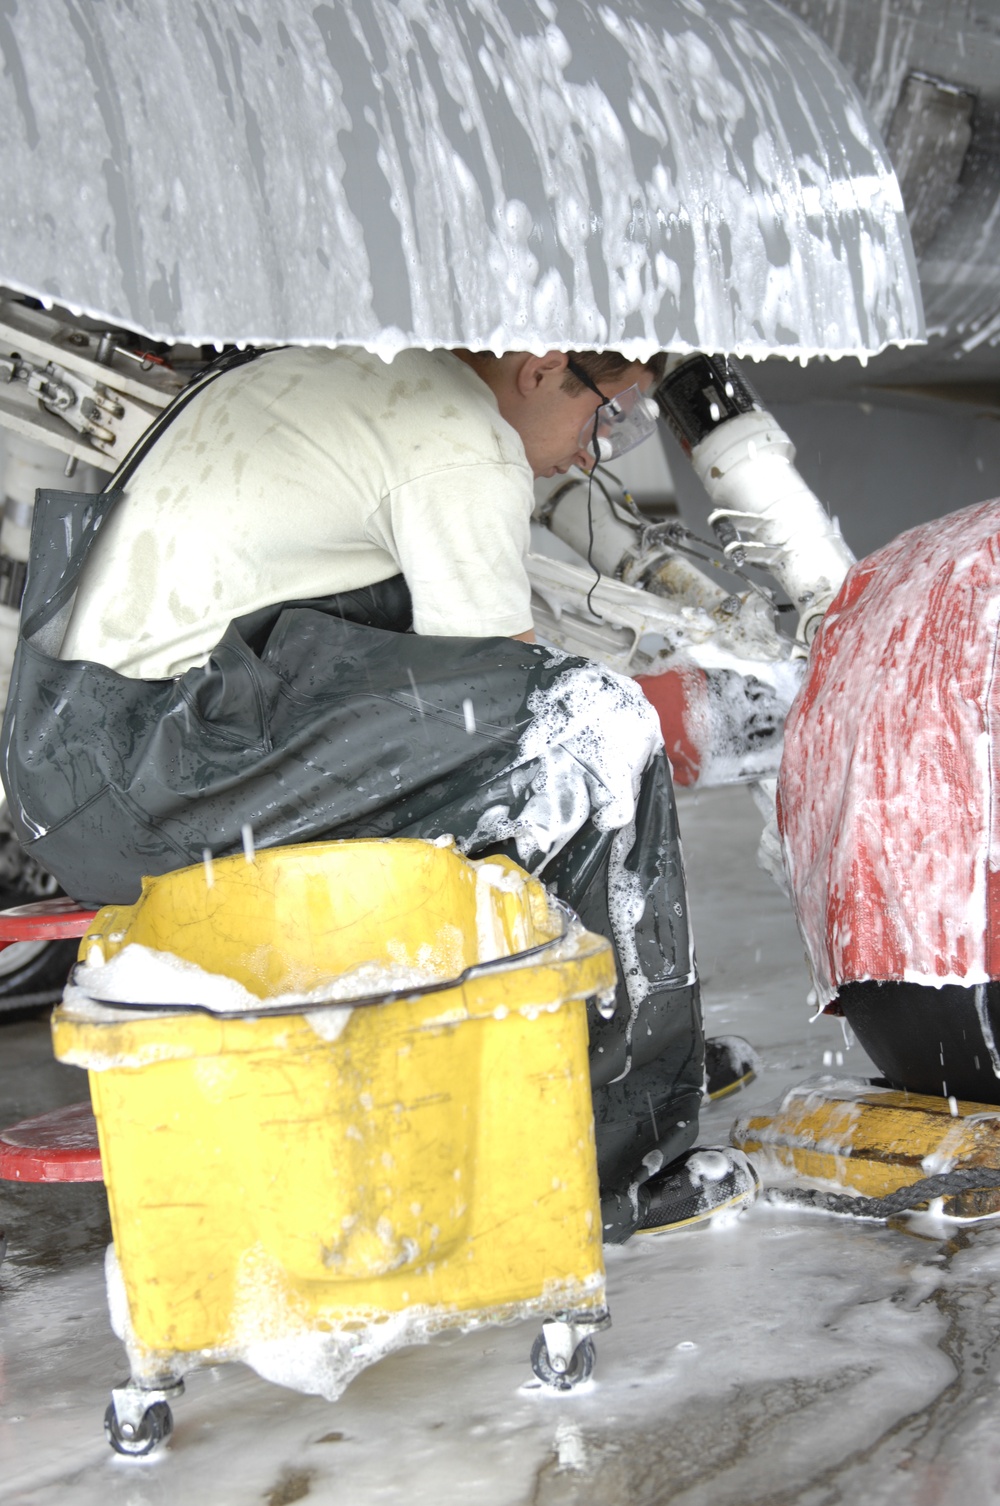 Wash-rack keeps F-16s clean